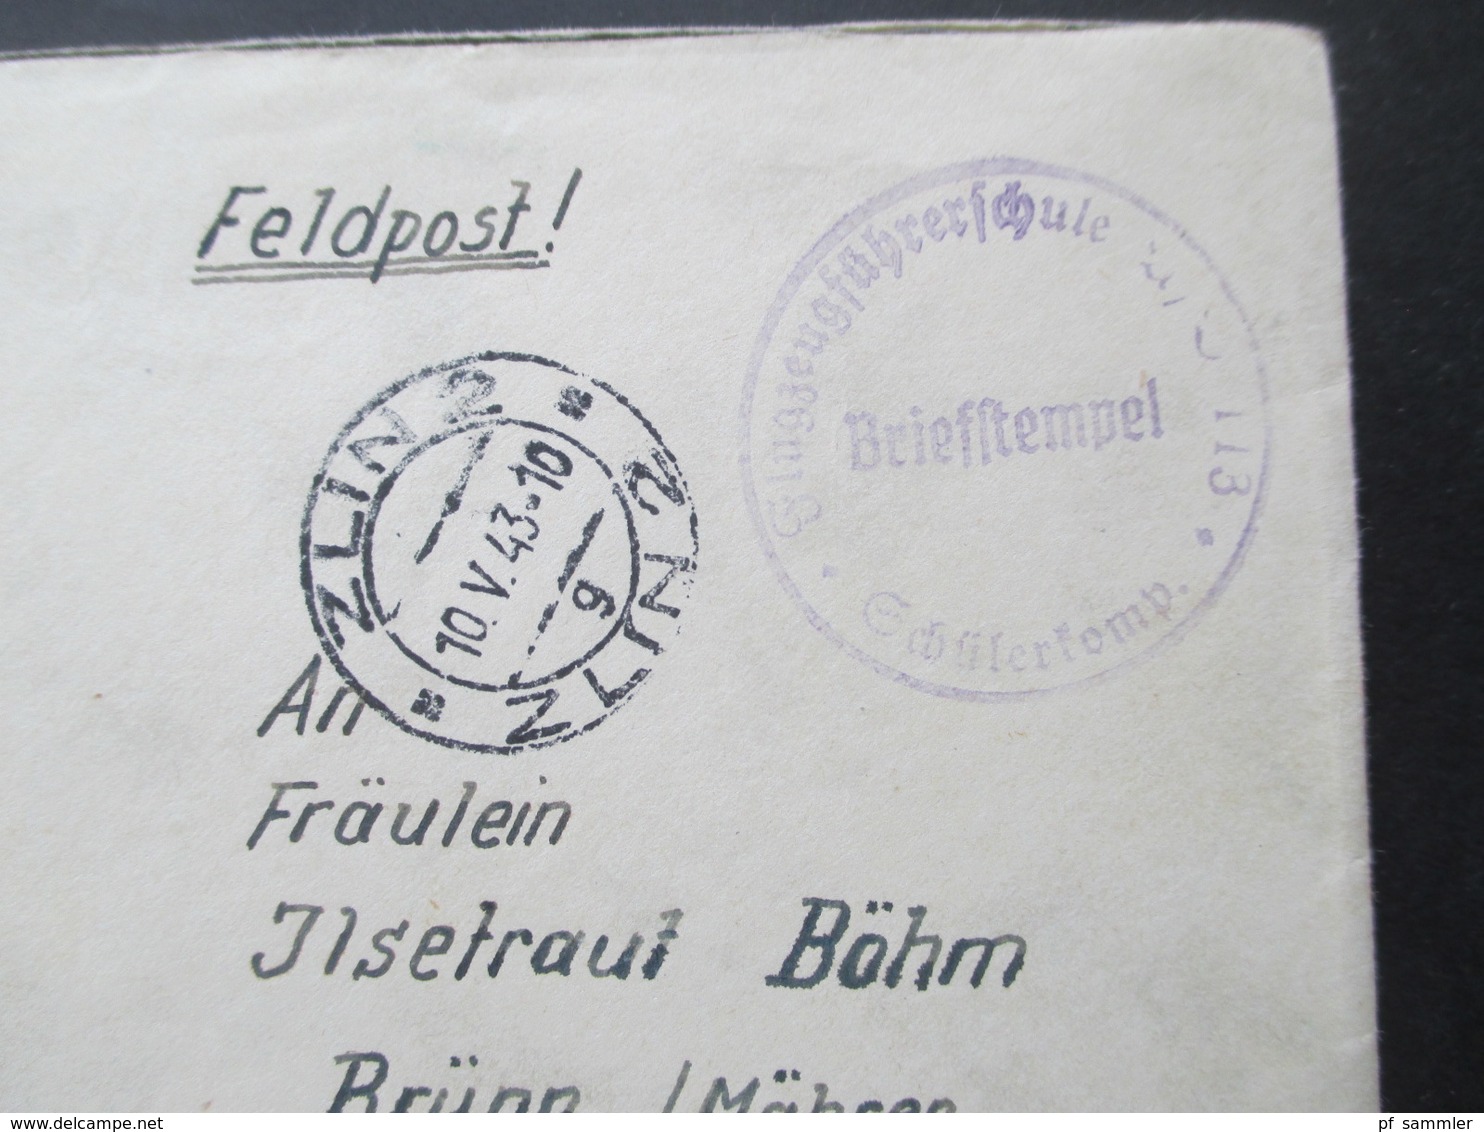 Böhmen Und Mähren 1943 Flugzeugführerschule 113 Schülerkomp. Absender Flieger In Zlin Flugkommando Otrokowitz - Lettres & Documents